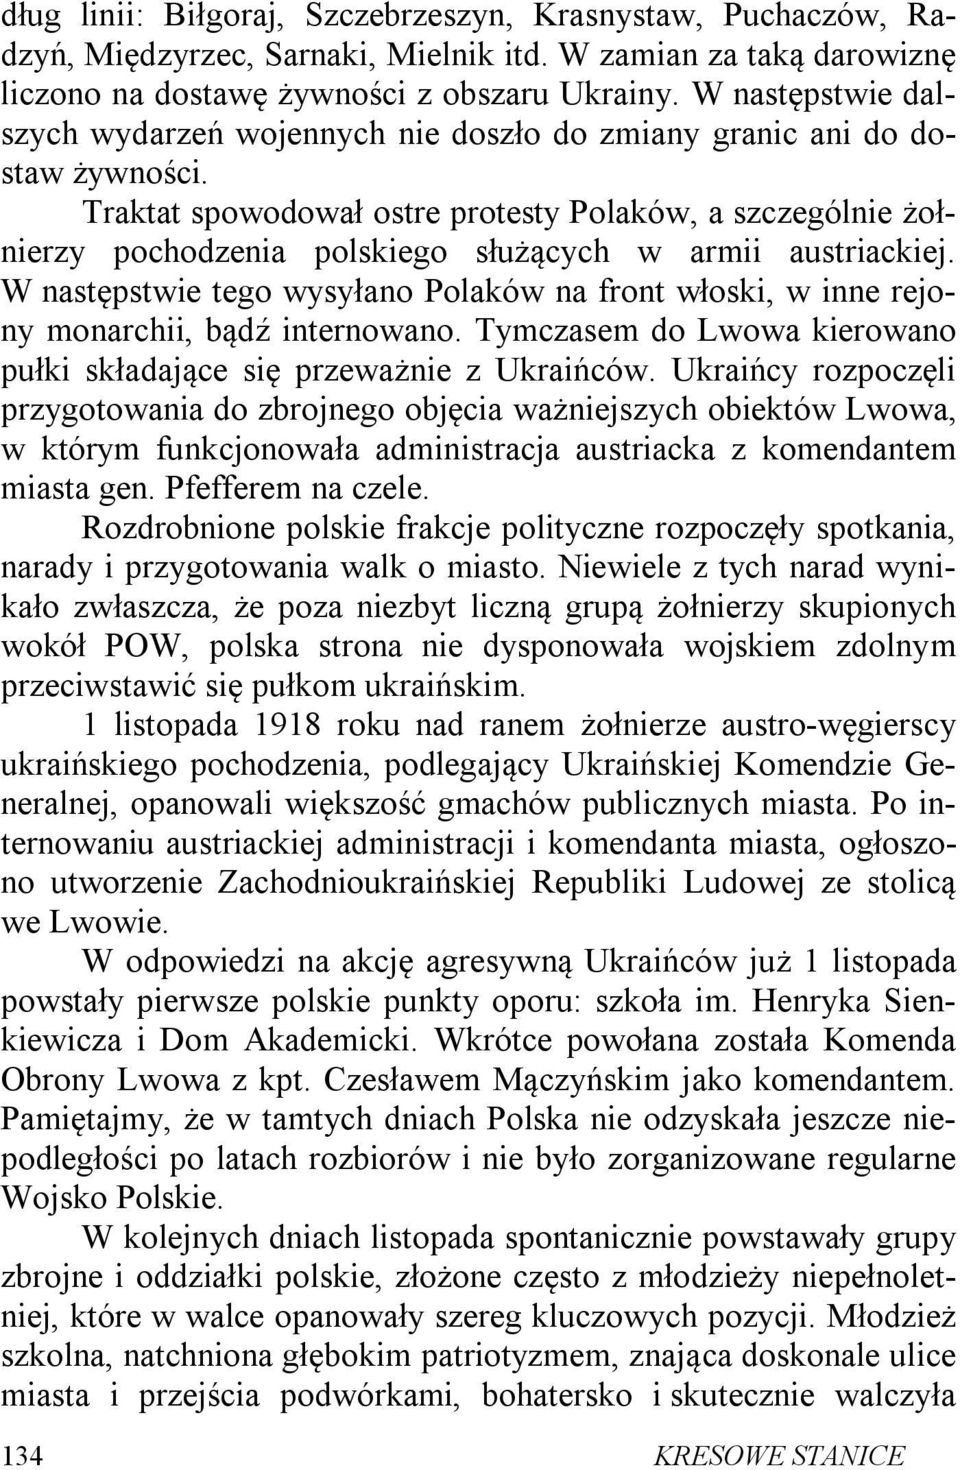 Traktat spowodował ostre protesty Polaków, a szczególnie żołnierzy pochodzenia polskiego służących w armii austriackiej.